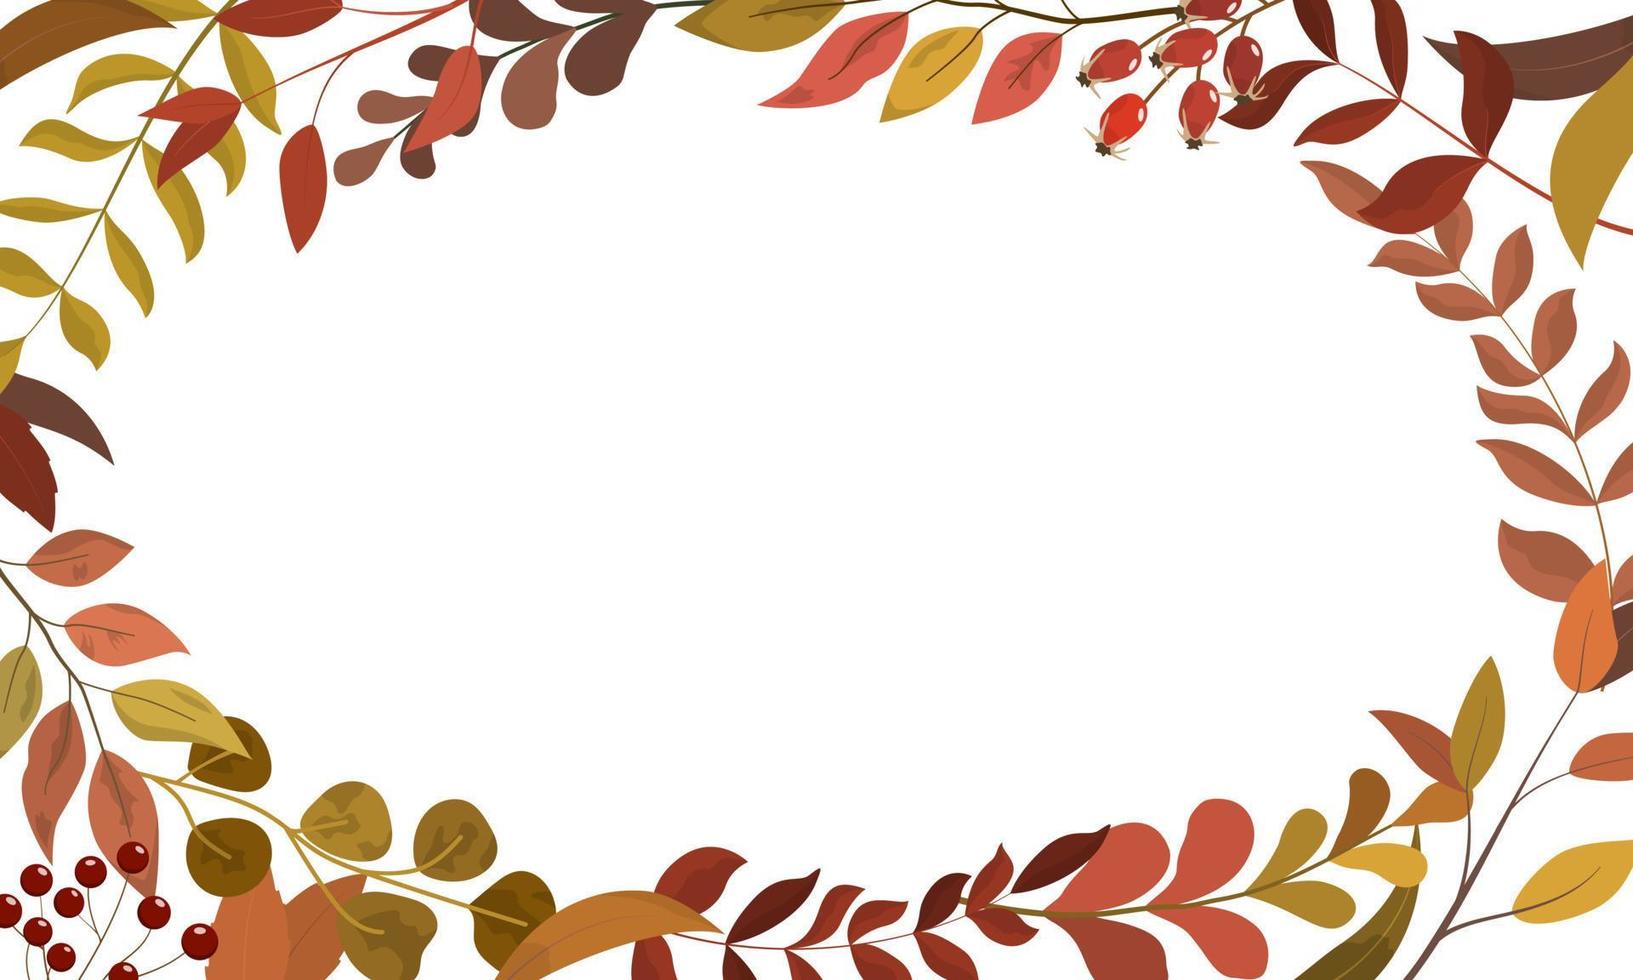 höstens rustika lövverk kantram i vinröda, gula och bruna färger. hösten säsongens livfulla färger lövverk, bär. bröllop inbjudan kort mall. isolerad på vit bakgrund. vektor